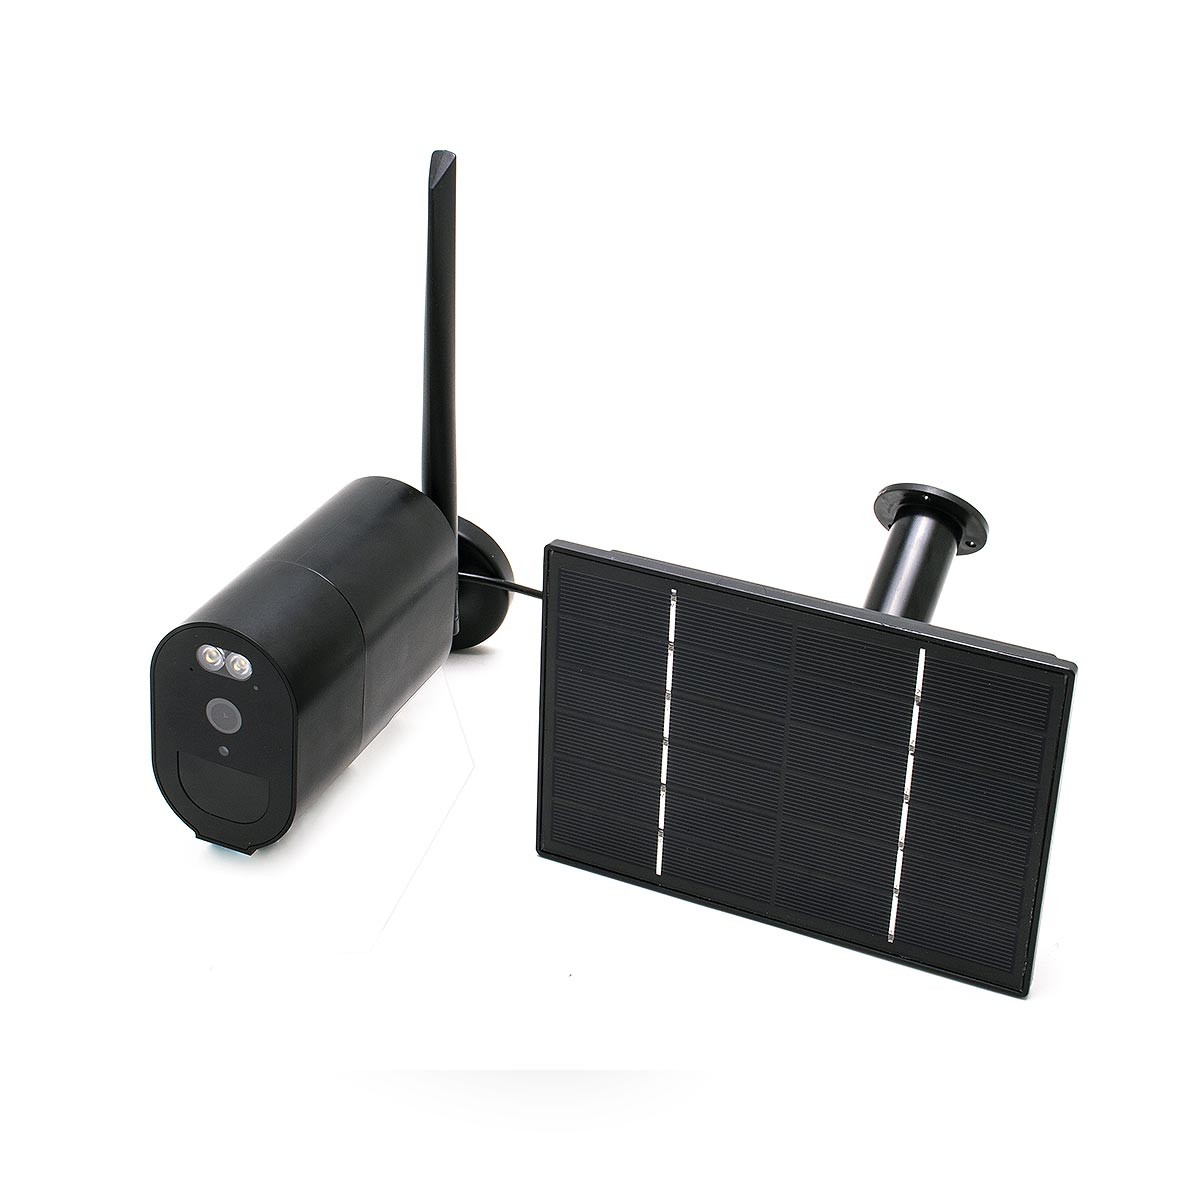 Caméra 4G solaire HD 1080P autonome sans-fil waterproof vision nocturne 128 Go accès à distance via iPhone Android